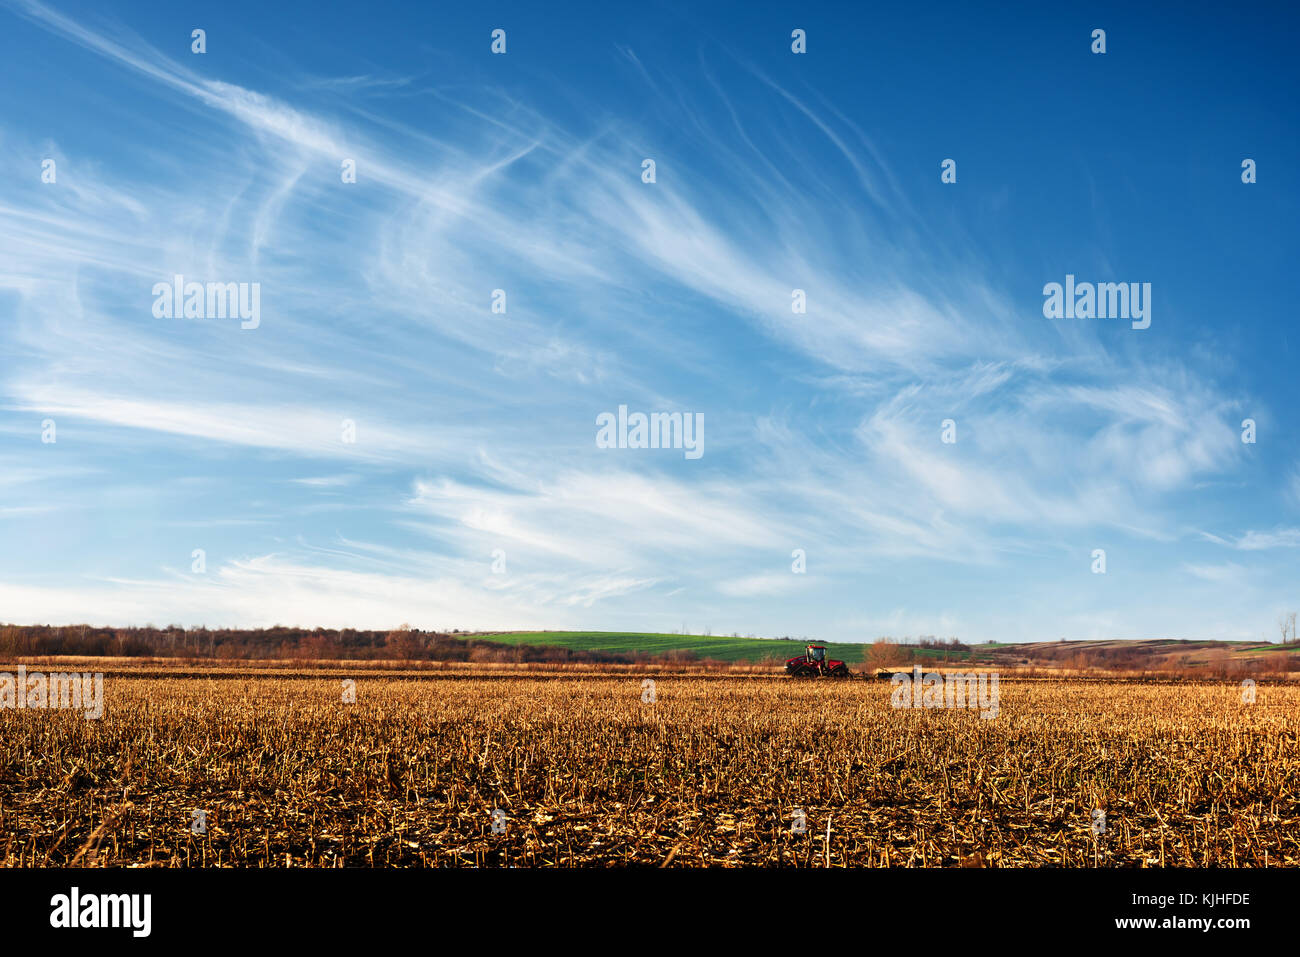 Amazing rural scene on autumn corn field Stock Photo